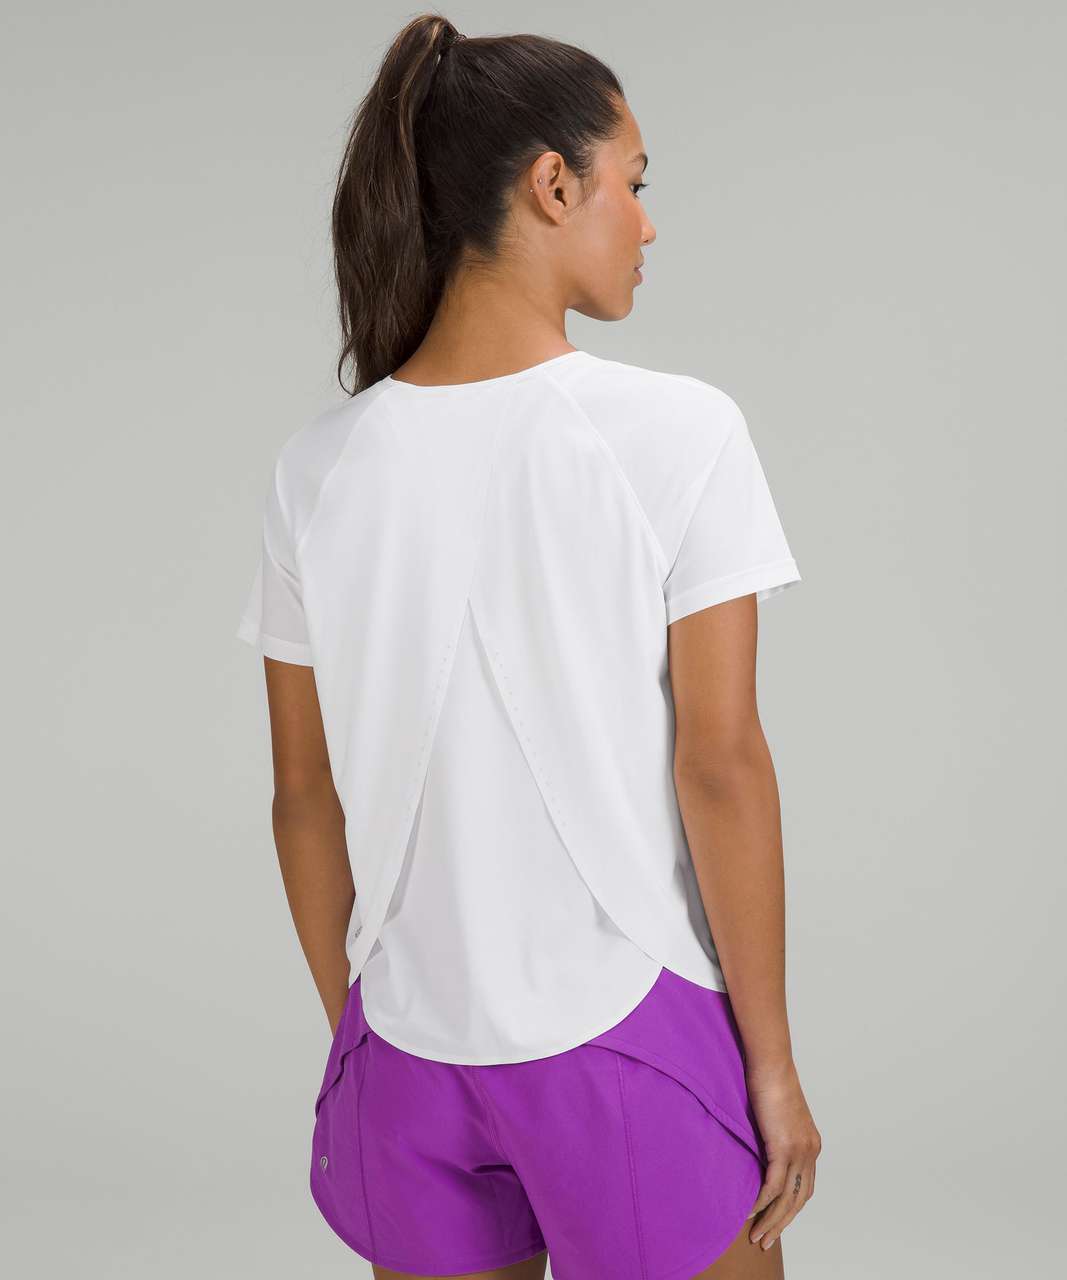 Lululemon UV Protection Running Short Sleeve Shirt - White